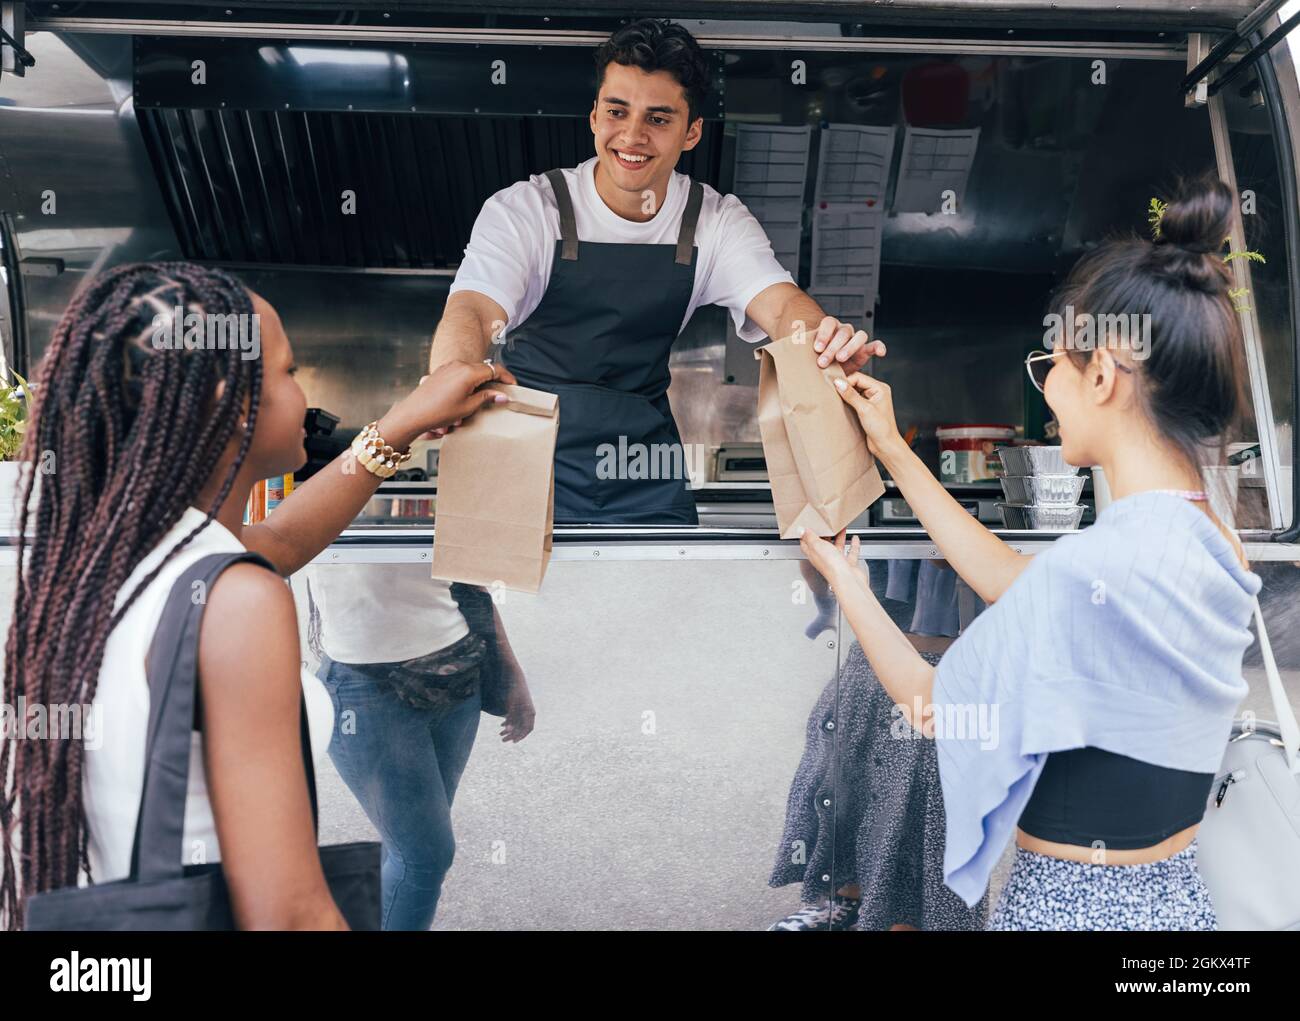 Zwei Freundinnen, die verpackte Lebensmittel von einem jungen Unternehmer an einem Food Truck erhalten Stockfoto